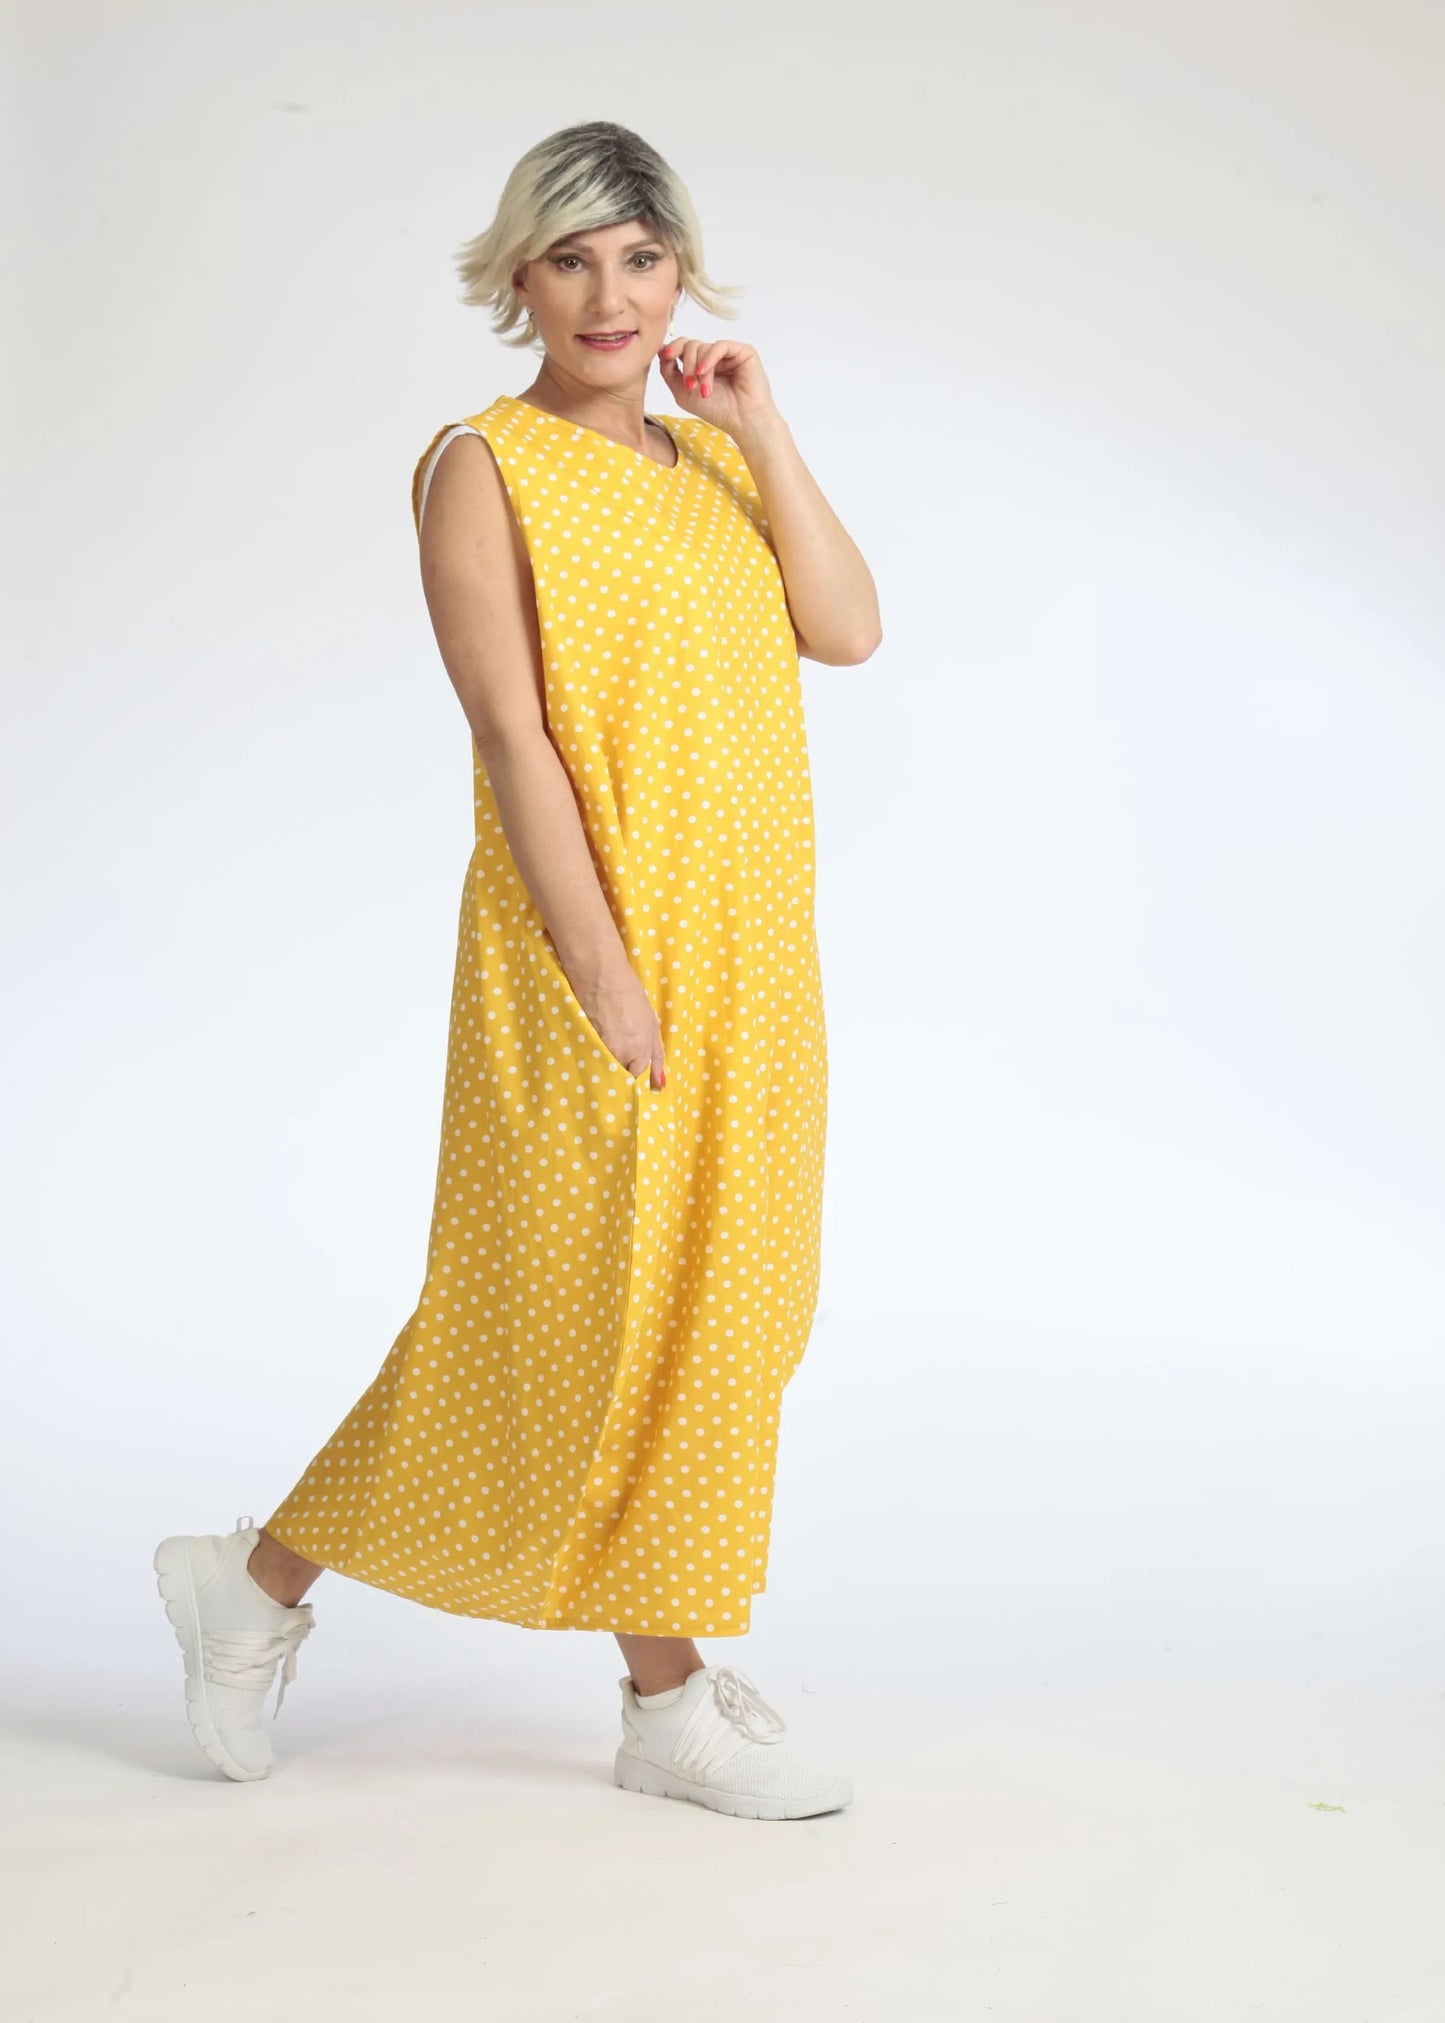 Sommer Kleid in Ballon Form aus glatter Popeline Qualität, Freya in Gelb-Weiß